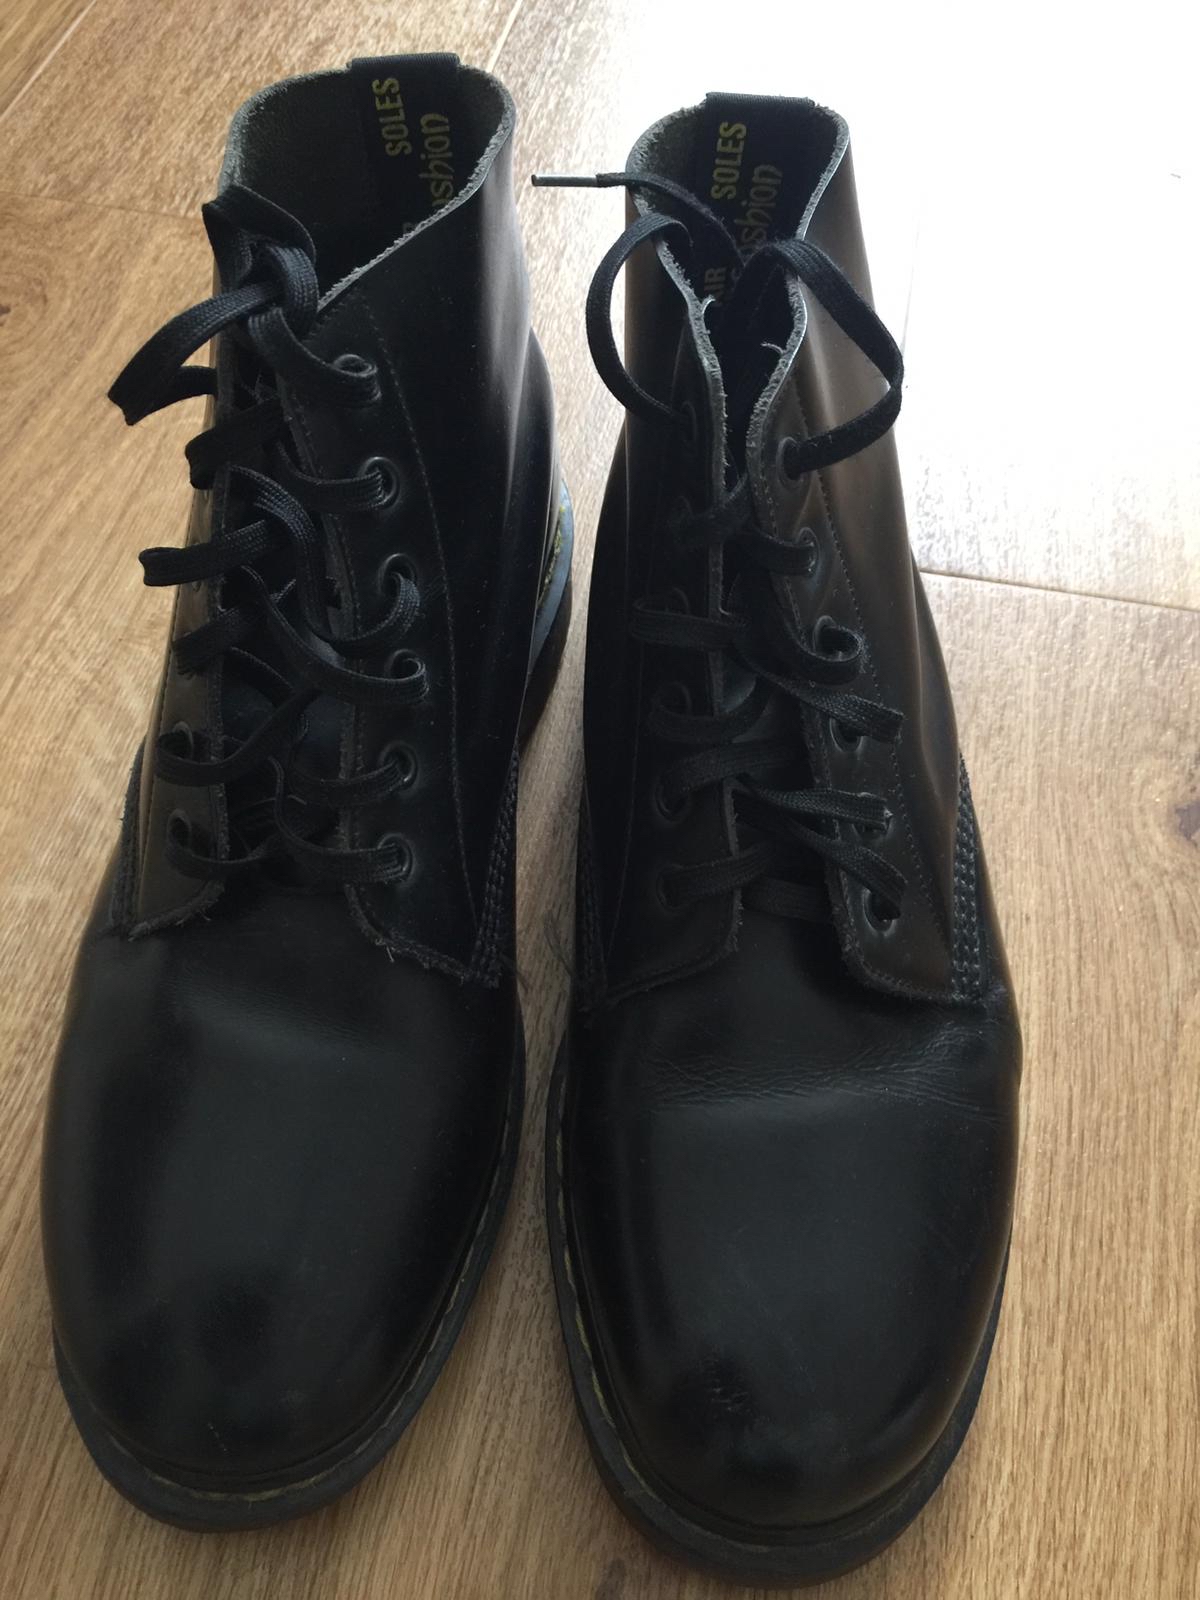 all black doc marten boots